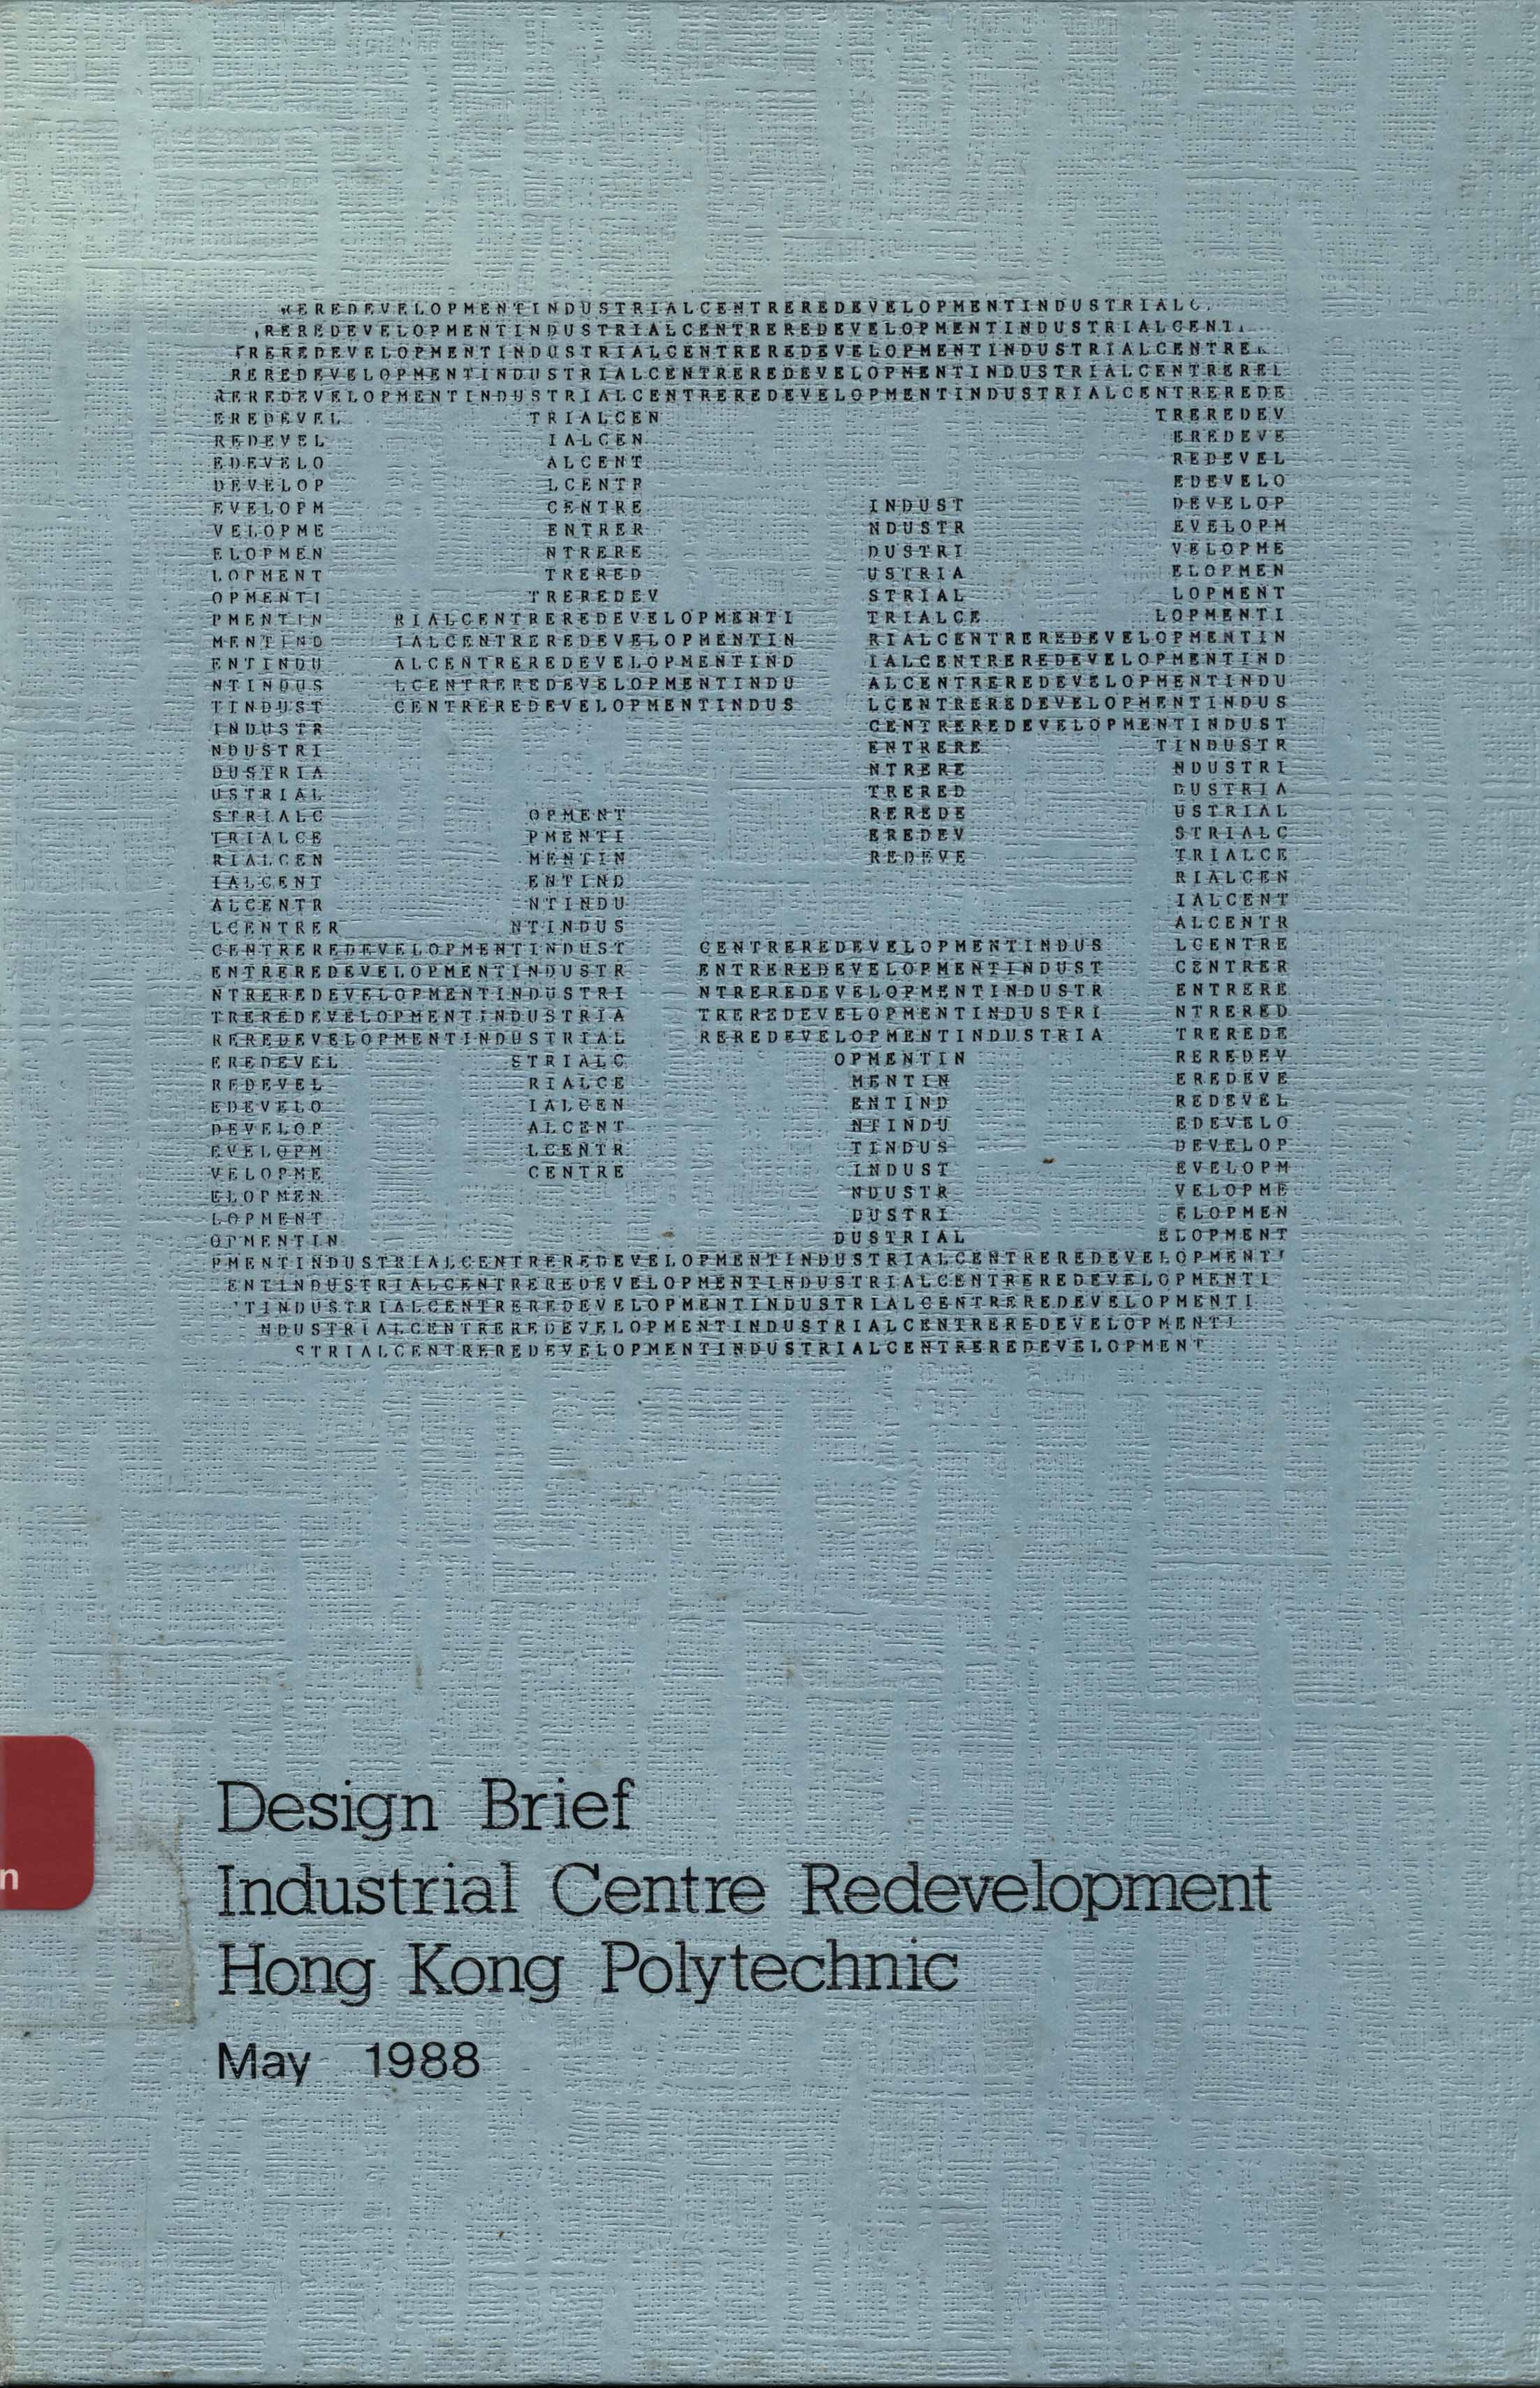 Design brief : Industrial Centre redevelopment